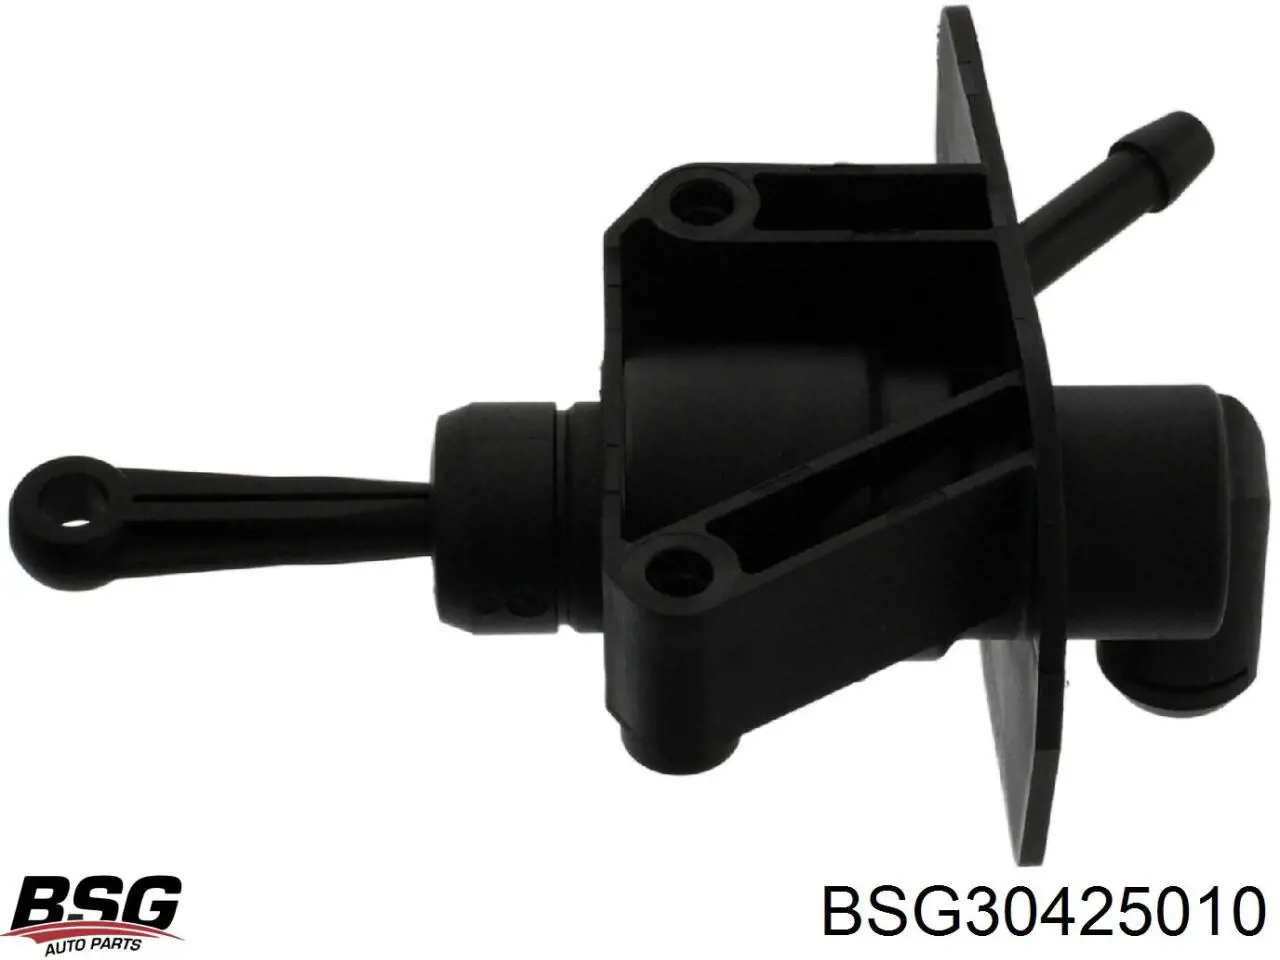 BSG30425010 BSG cilindro maestro de embrague